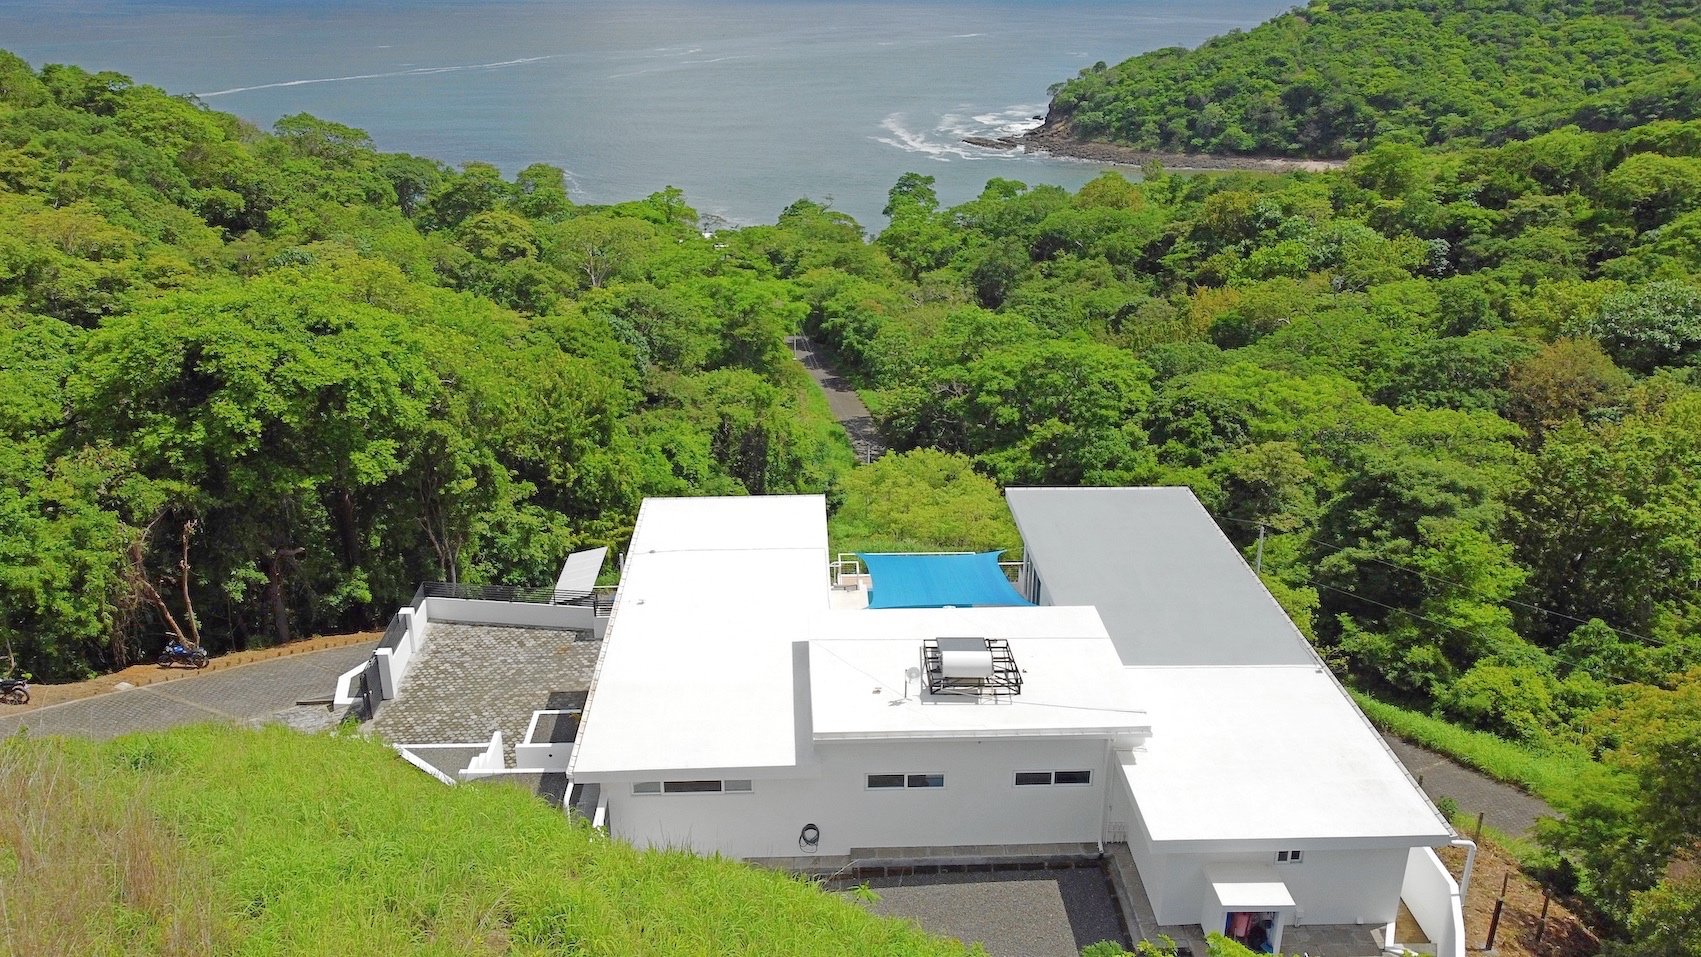 Home For Sale San Juan Del Sur Nicaragua Real Estate 2.jpg